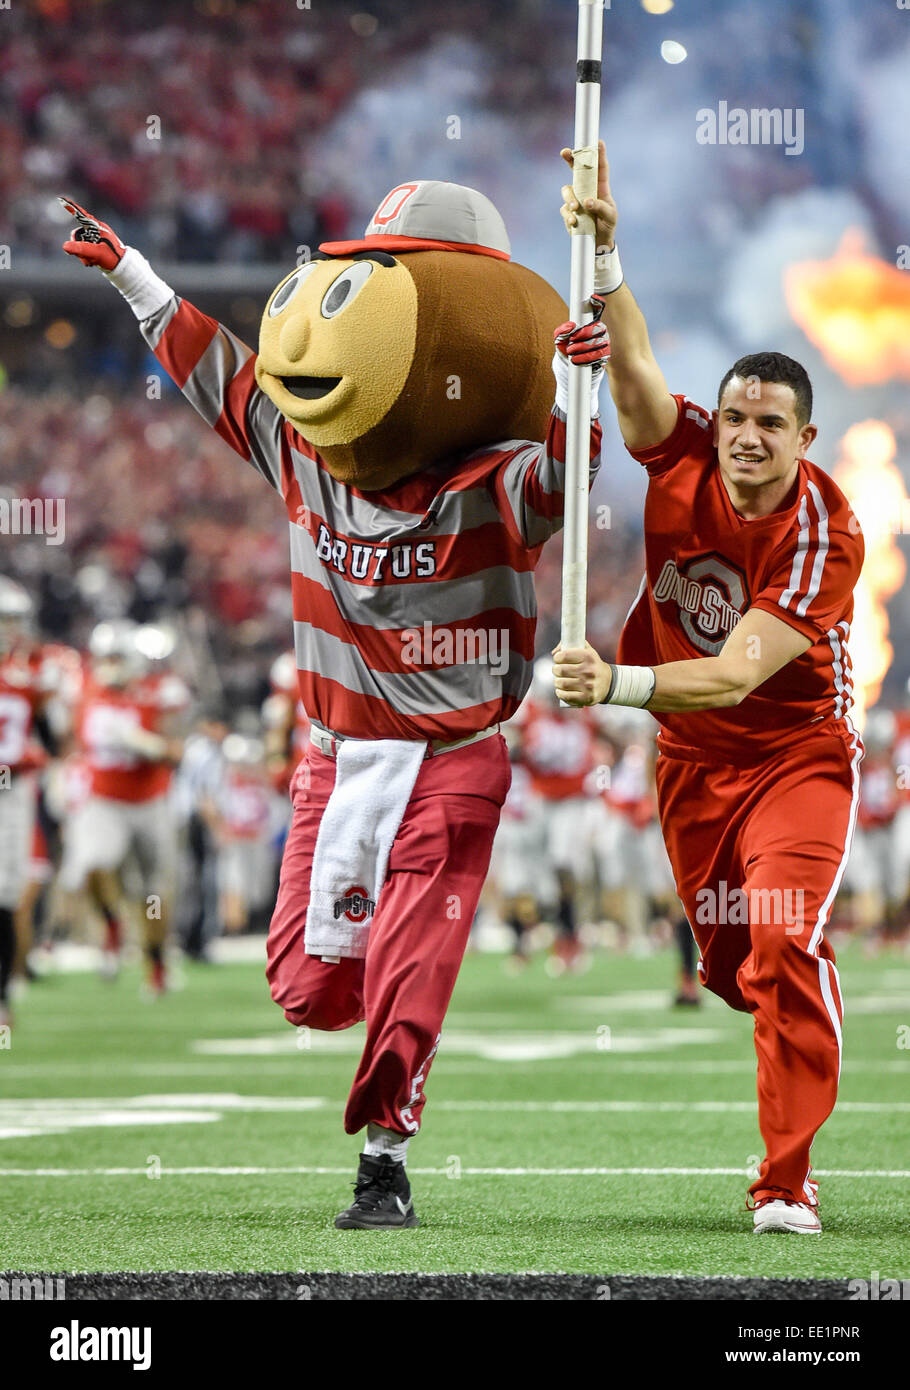 Arlington, Texas, USA. 12th Jan, 2015. Ohio State mascot Brutus takes ...